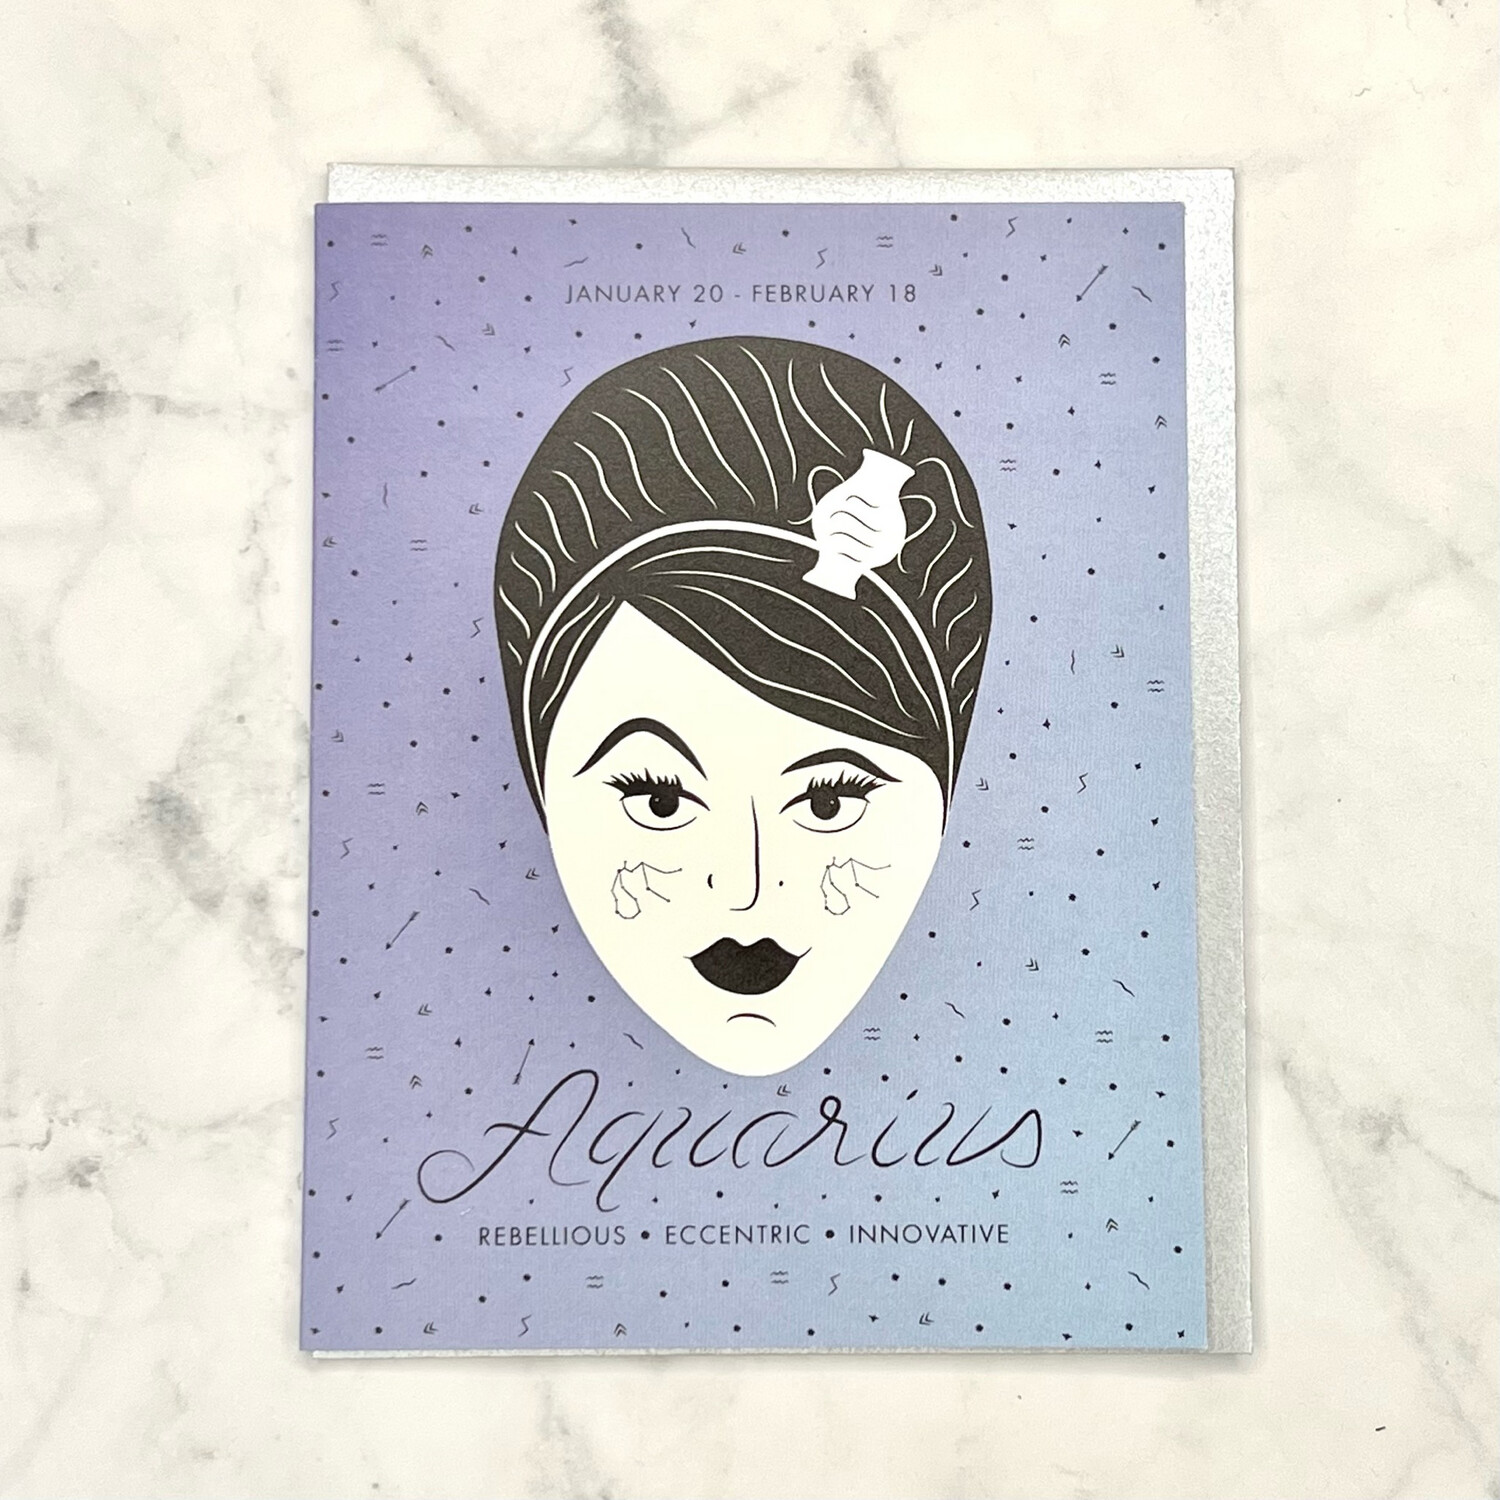 Aquarius card